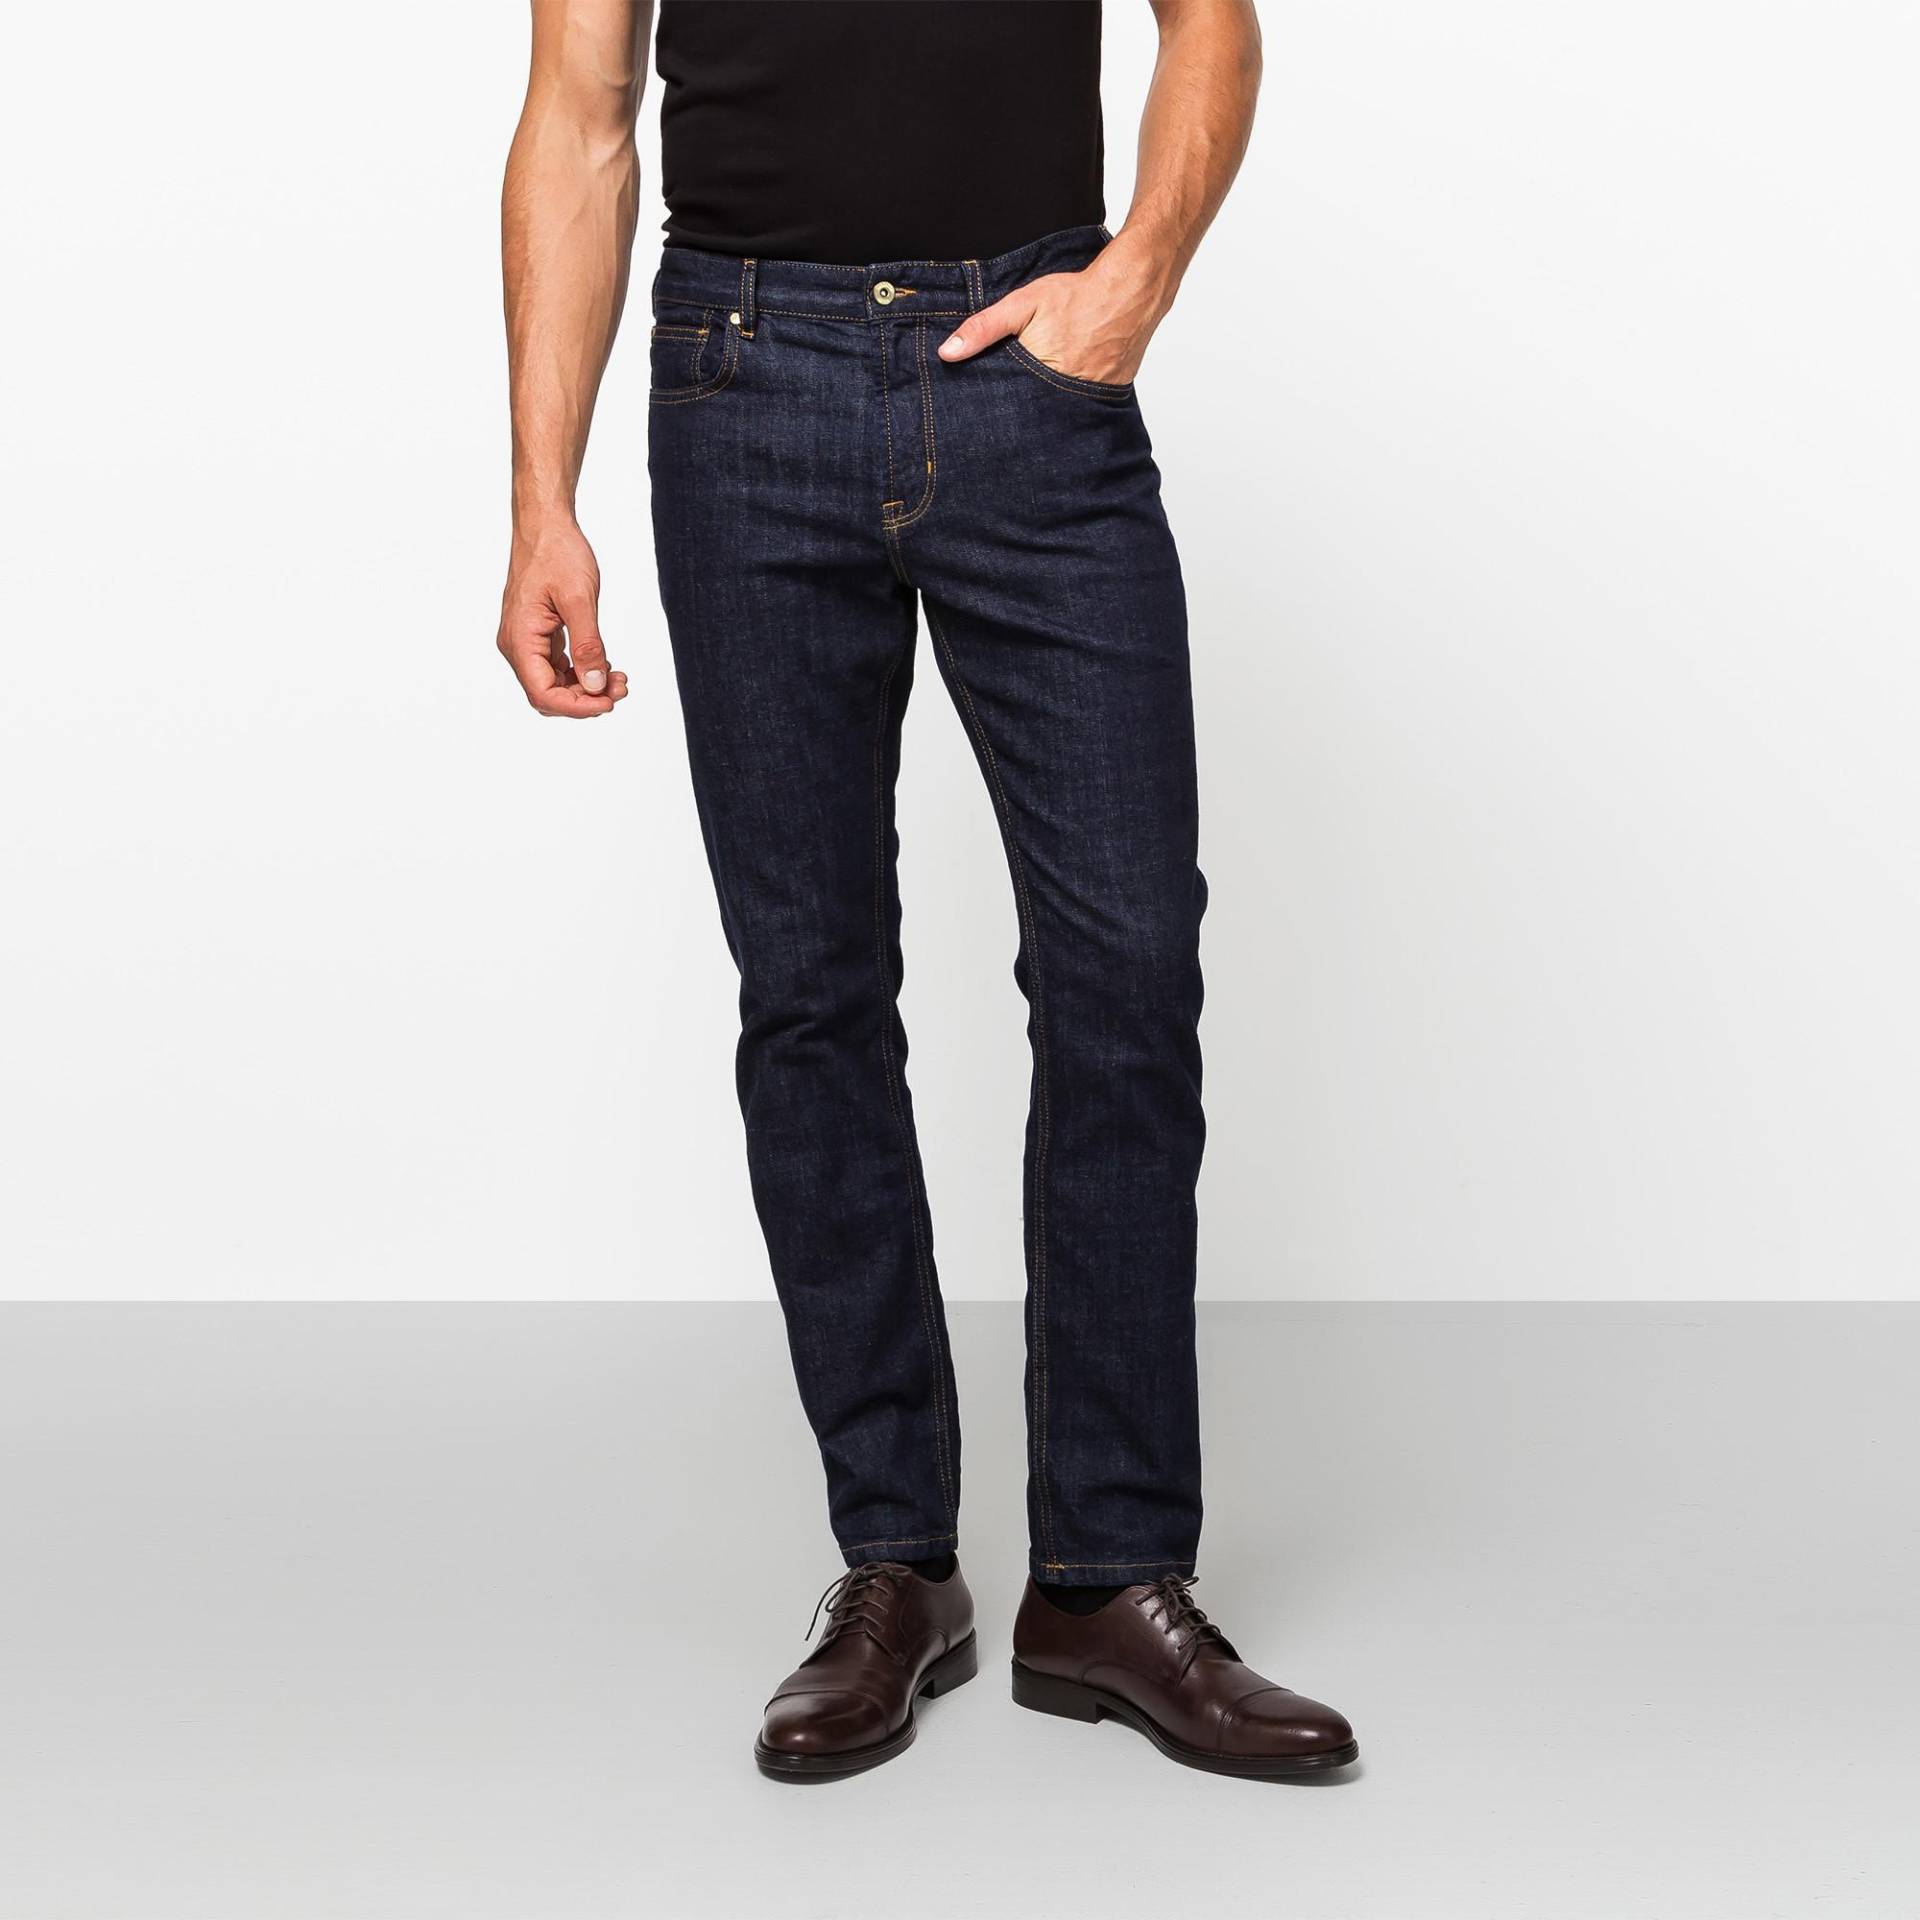 Jeans, Slim Fit Herren Blau Denim Dunkel L34/W36 von Manor Man